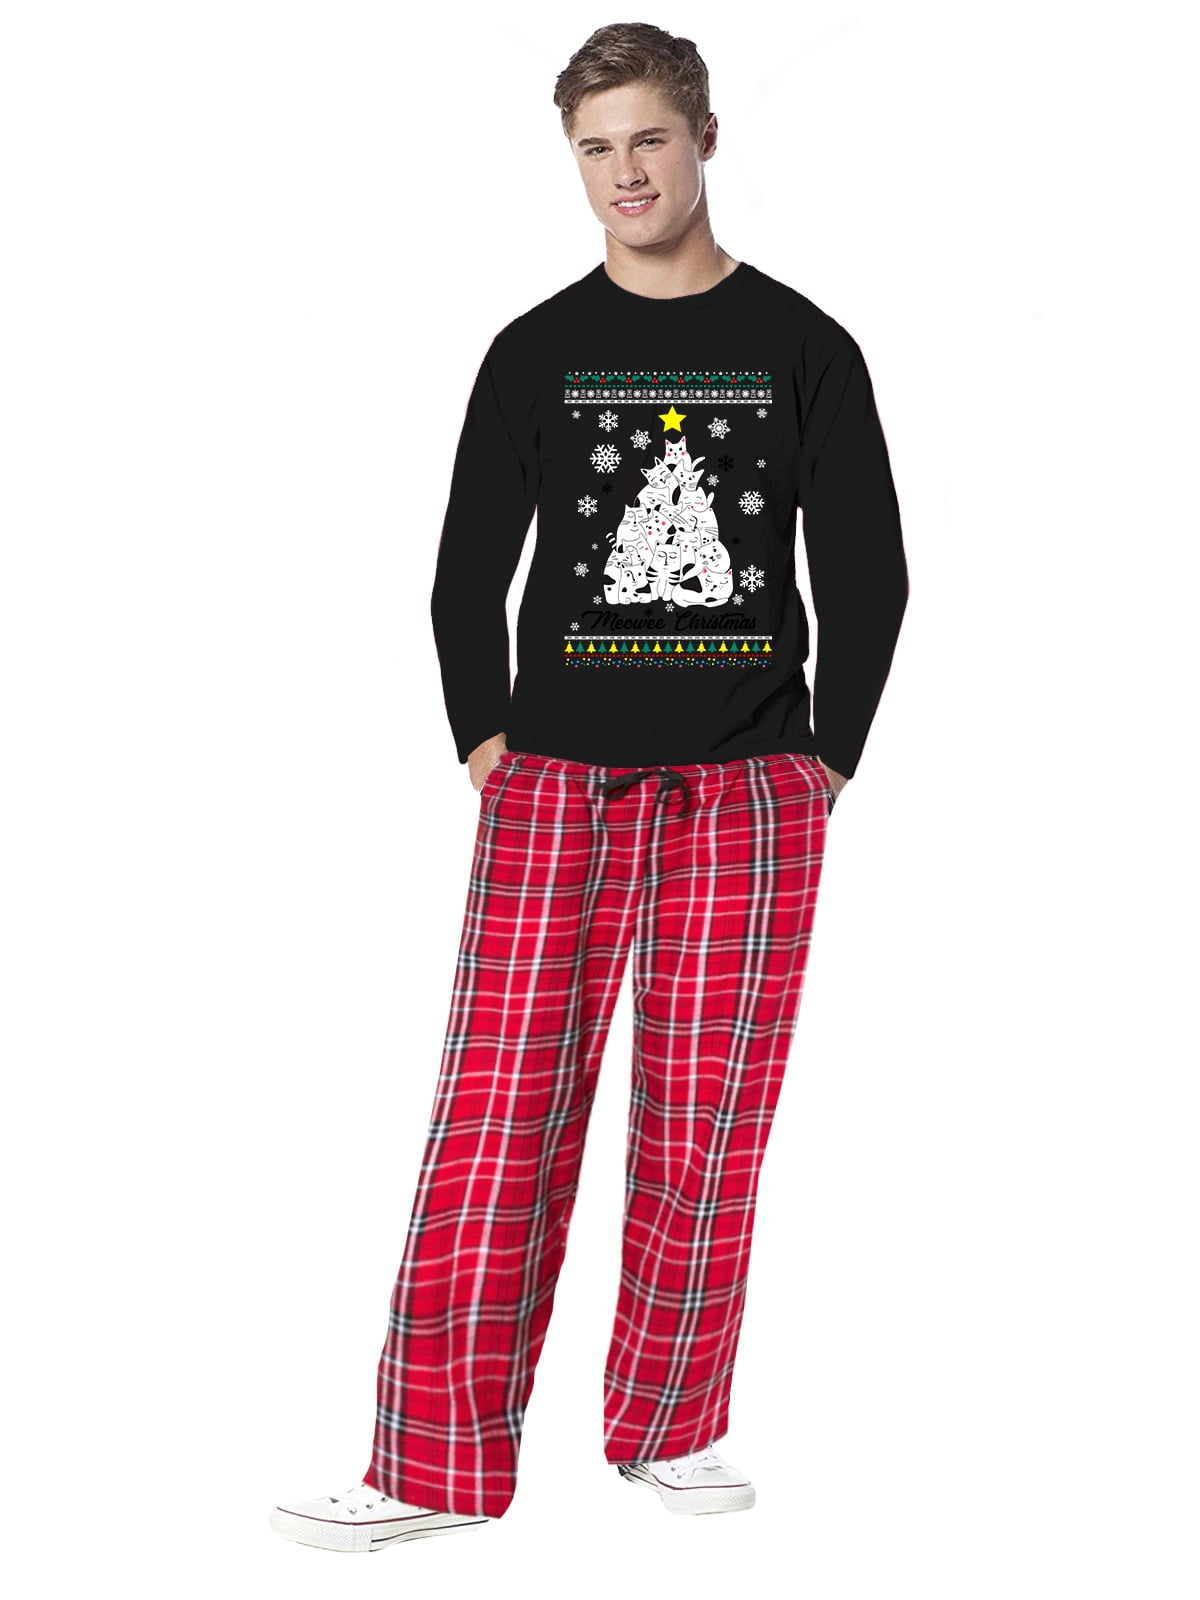 Awkward Styles - Awkward Styles Family Christmas Pajamas for Men Meowee Cat Xmas Tree Xmas Men ...